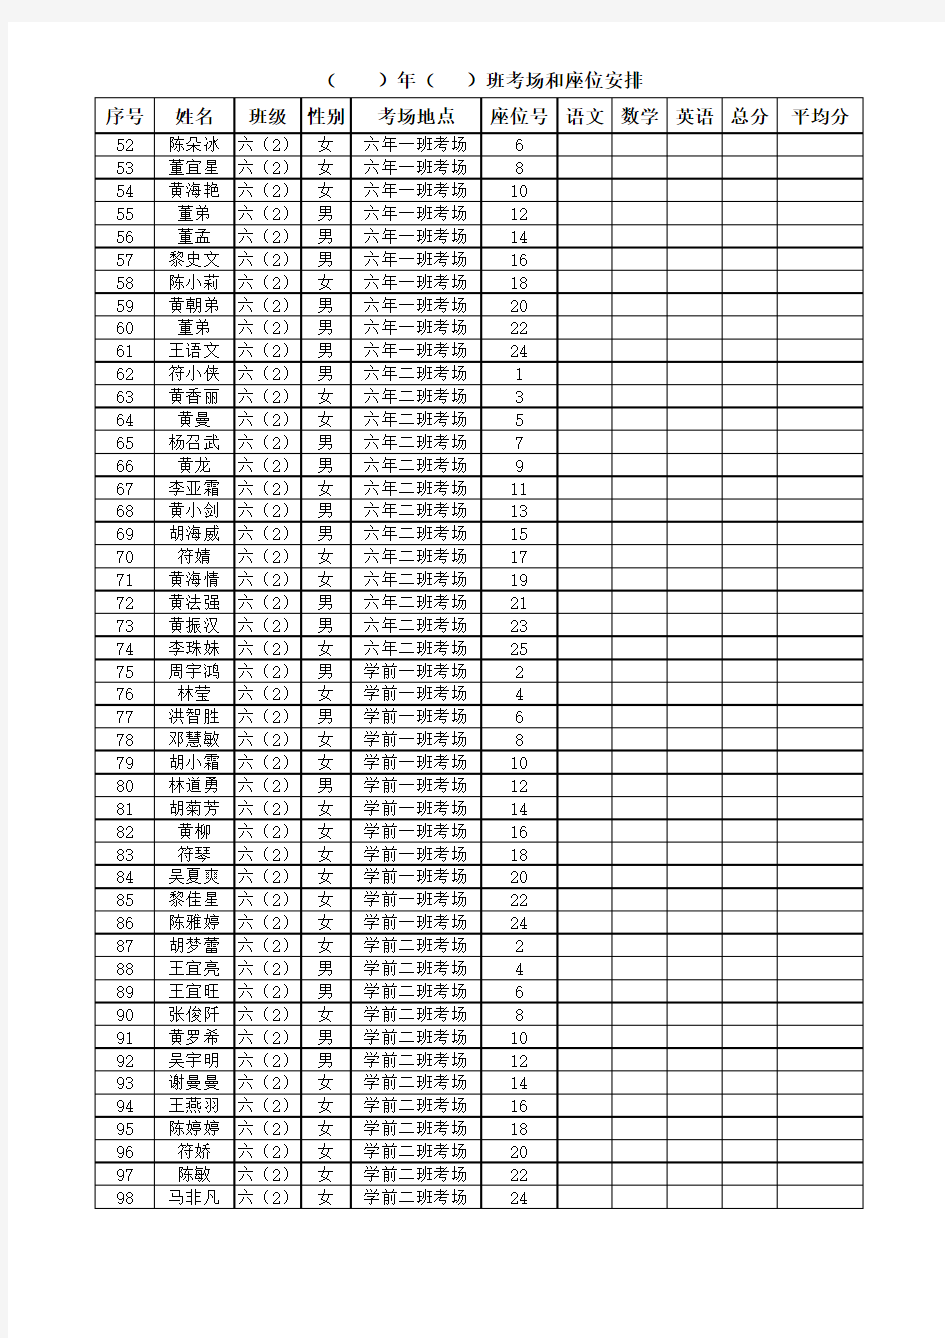 期中考试学生成绩登记表